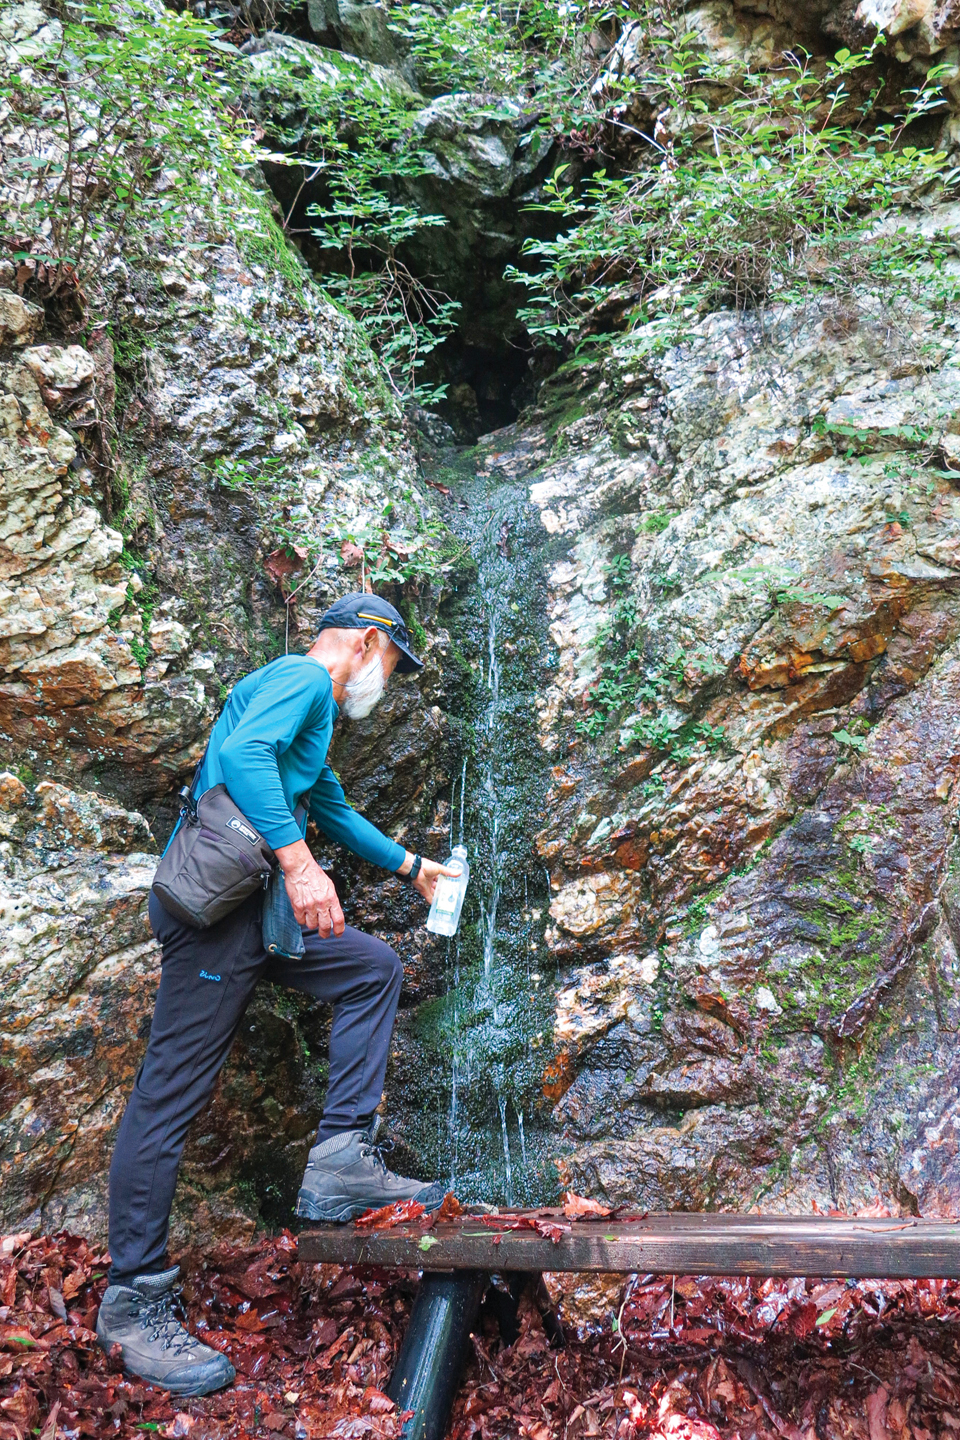 771m봉 서남릉 암릉길 현위치 11번 푯말을 지나면 나오는 약물탕. 약 3m 높이 바위구멍에서 물이 나온다.       